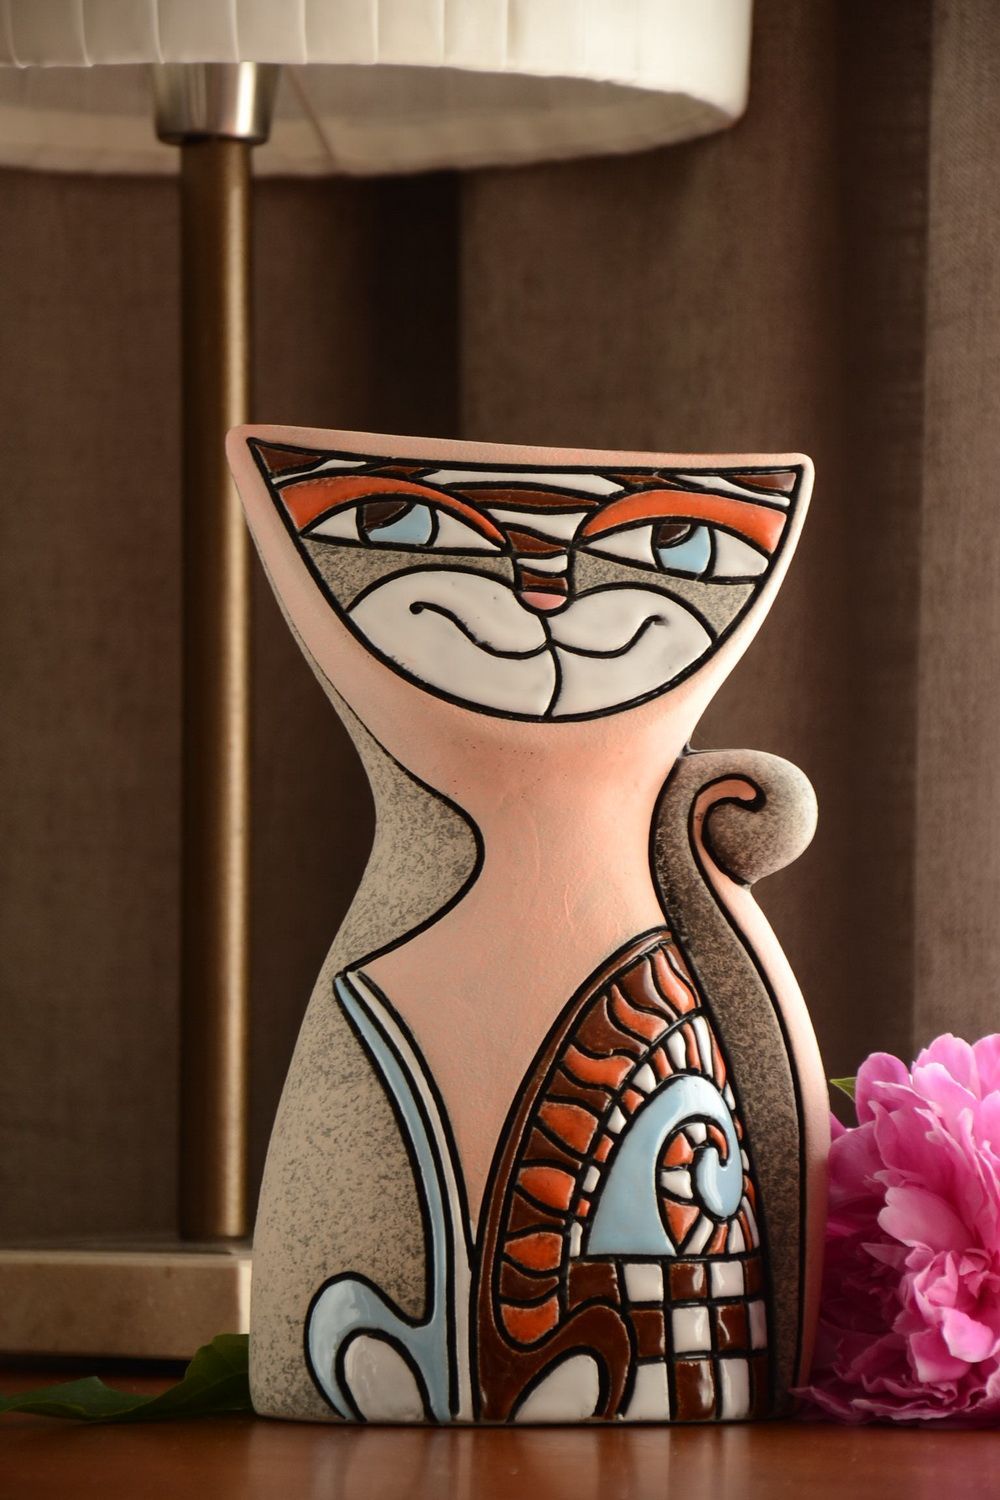 Полуфарфоровая ваза для цветов расписанная пигментами хэнд мэйд на 2 л Кошка фото 1